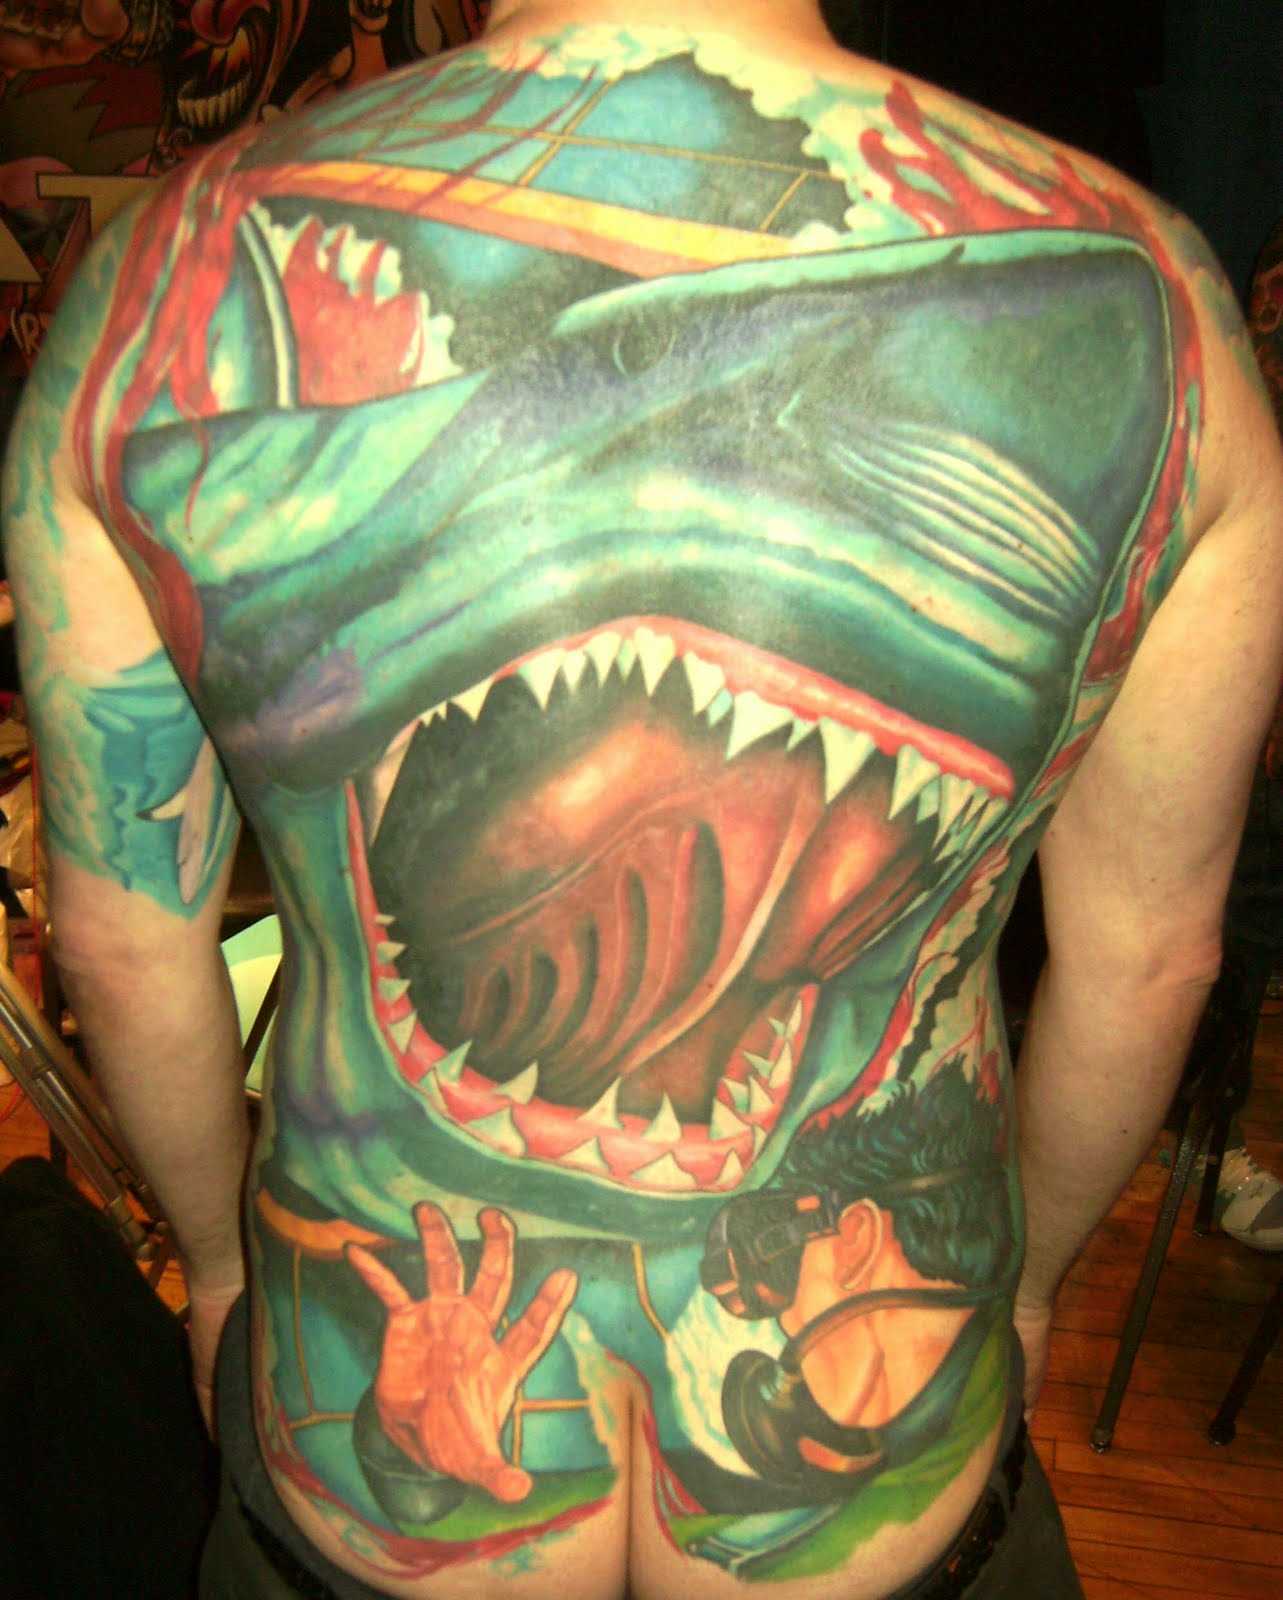 A tatuagem nas costas do cara - grande tubarão